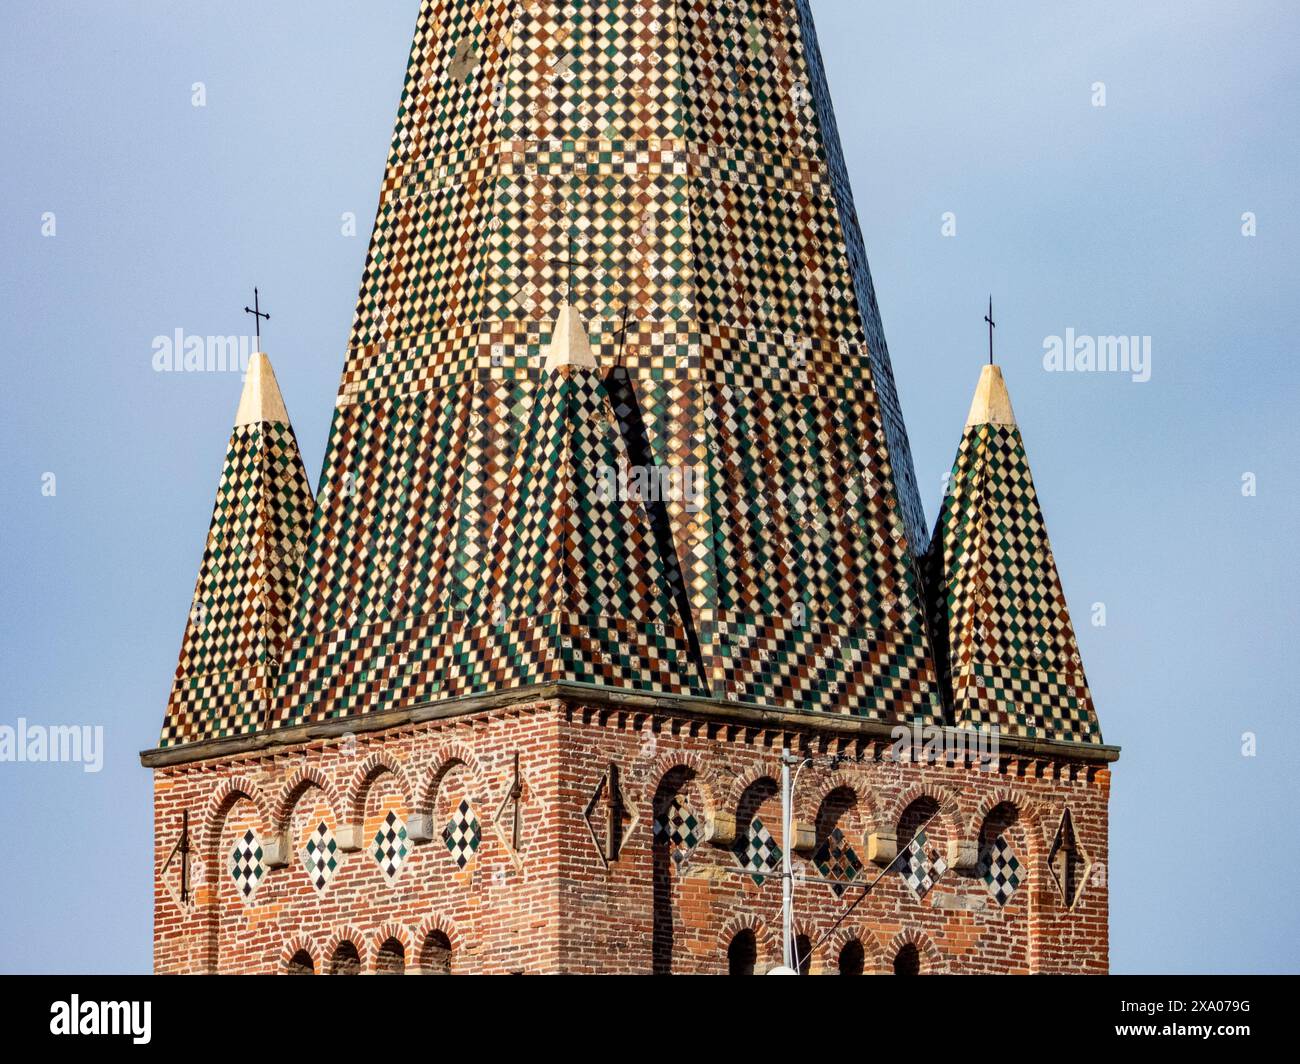 La torre della chiesa di Sant'Agostino con intricate tegole. Genova, Italia Foto Stock